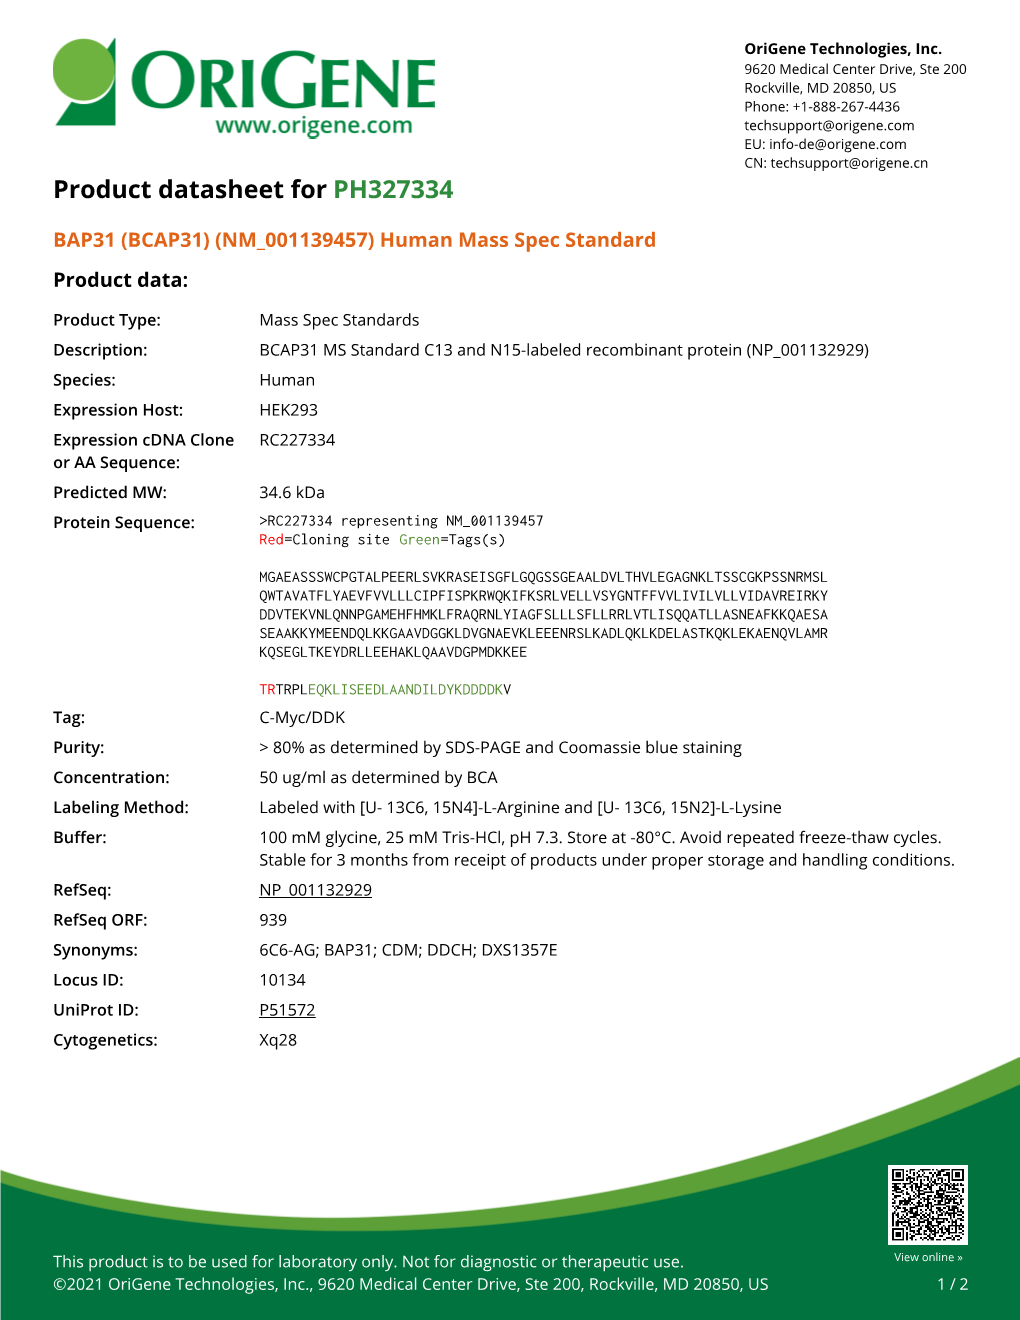 BAP31 (BCAP31) (NM 001139457) Human Mass Spec Standard Product Data